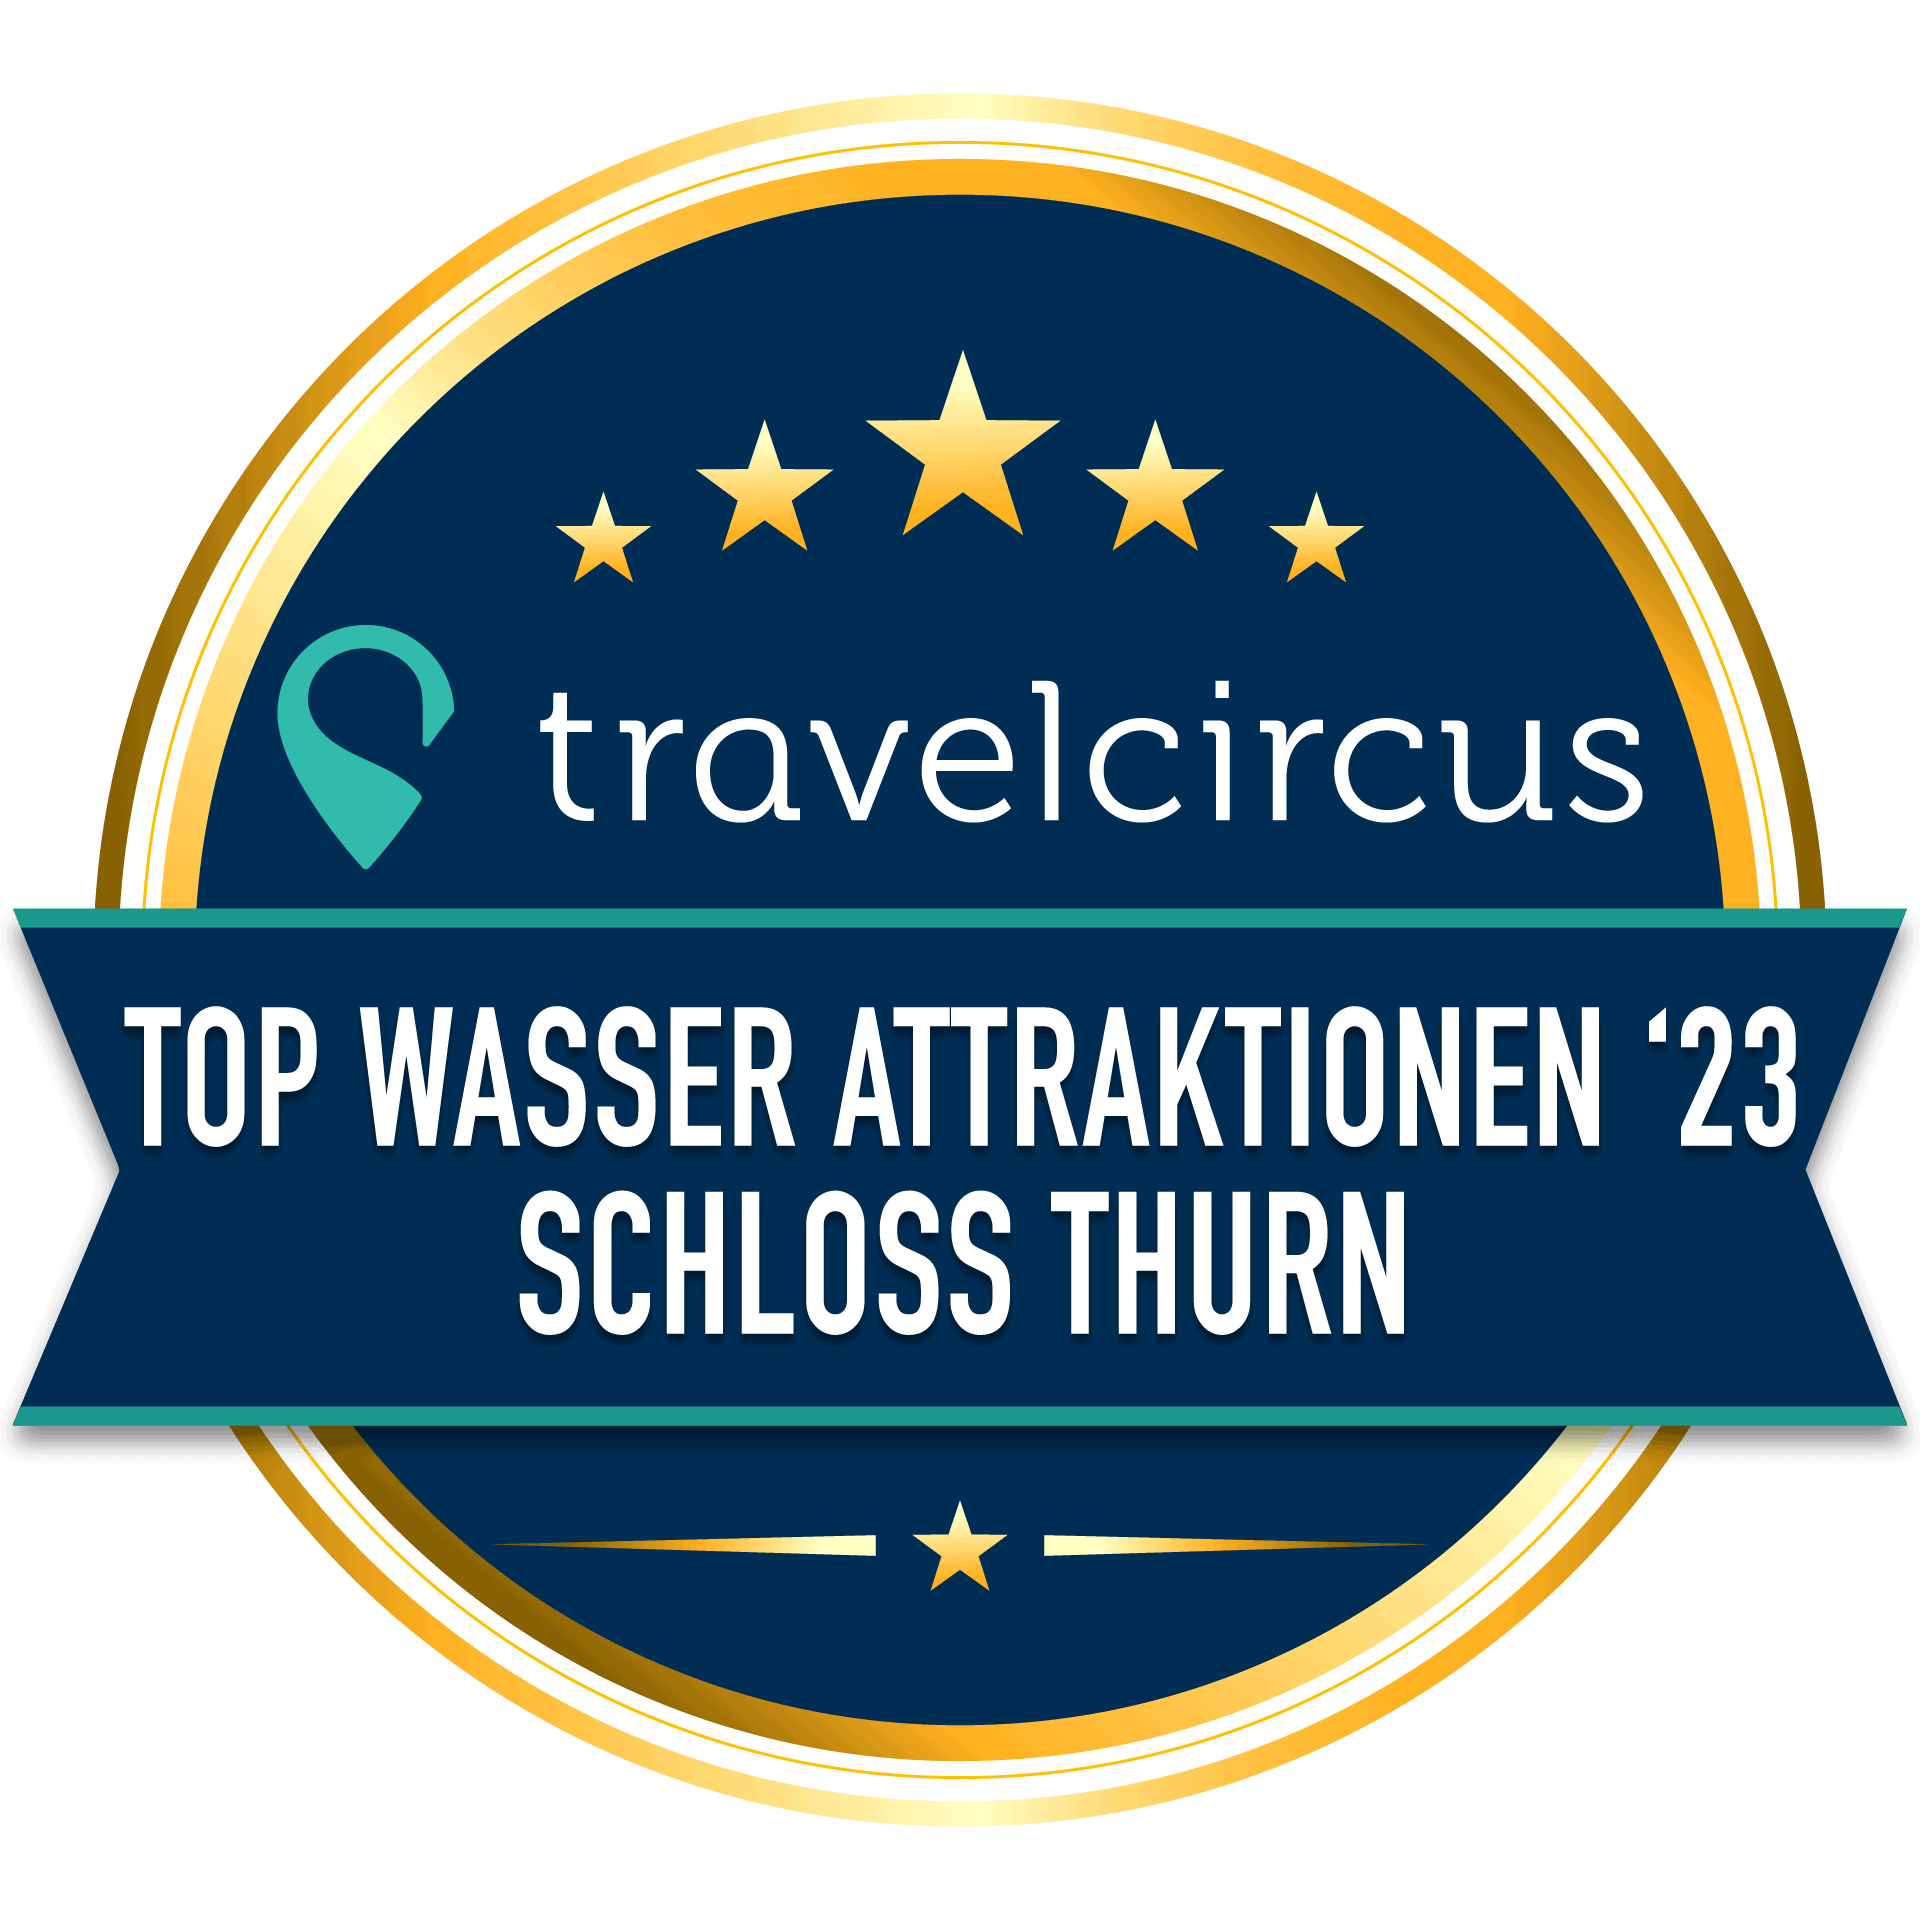 award schloss thurn 23